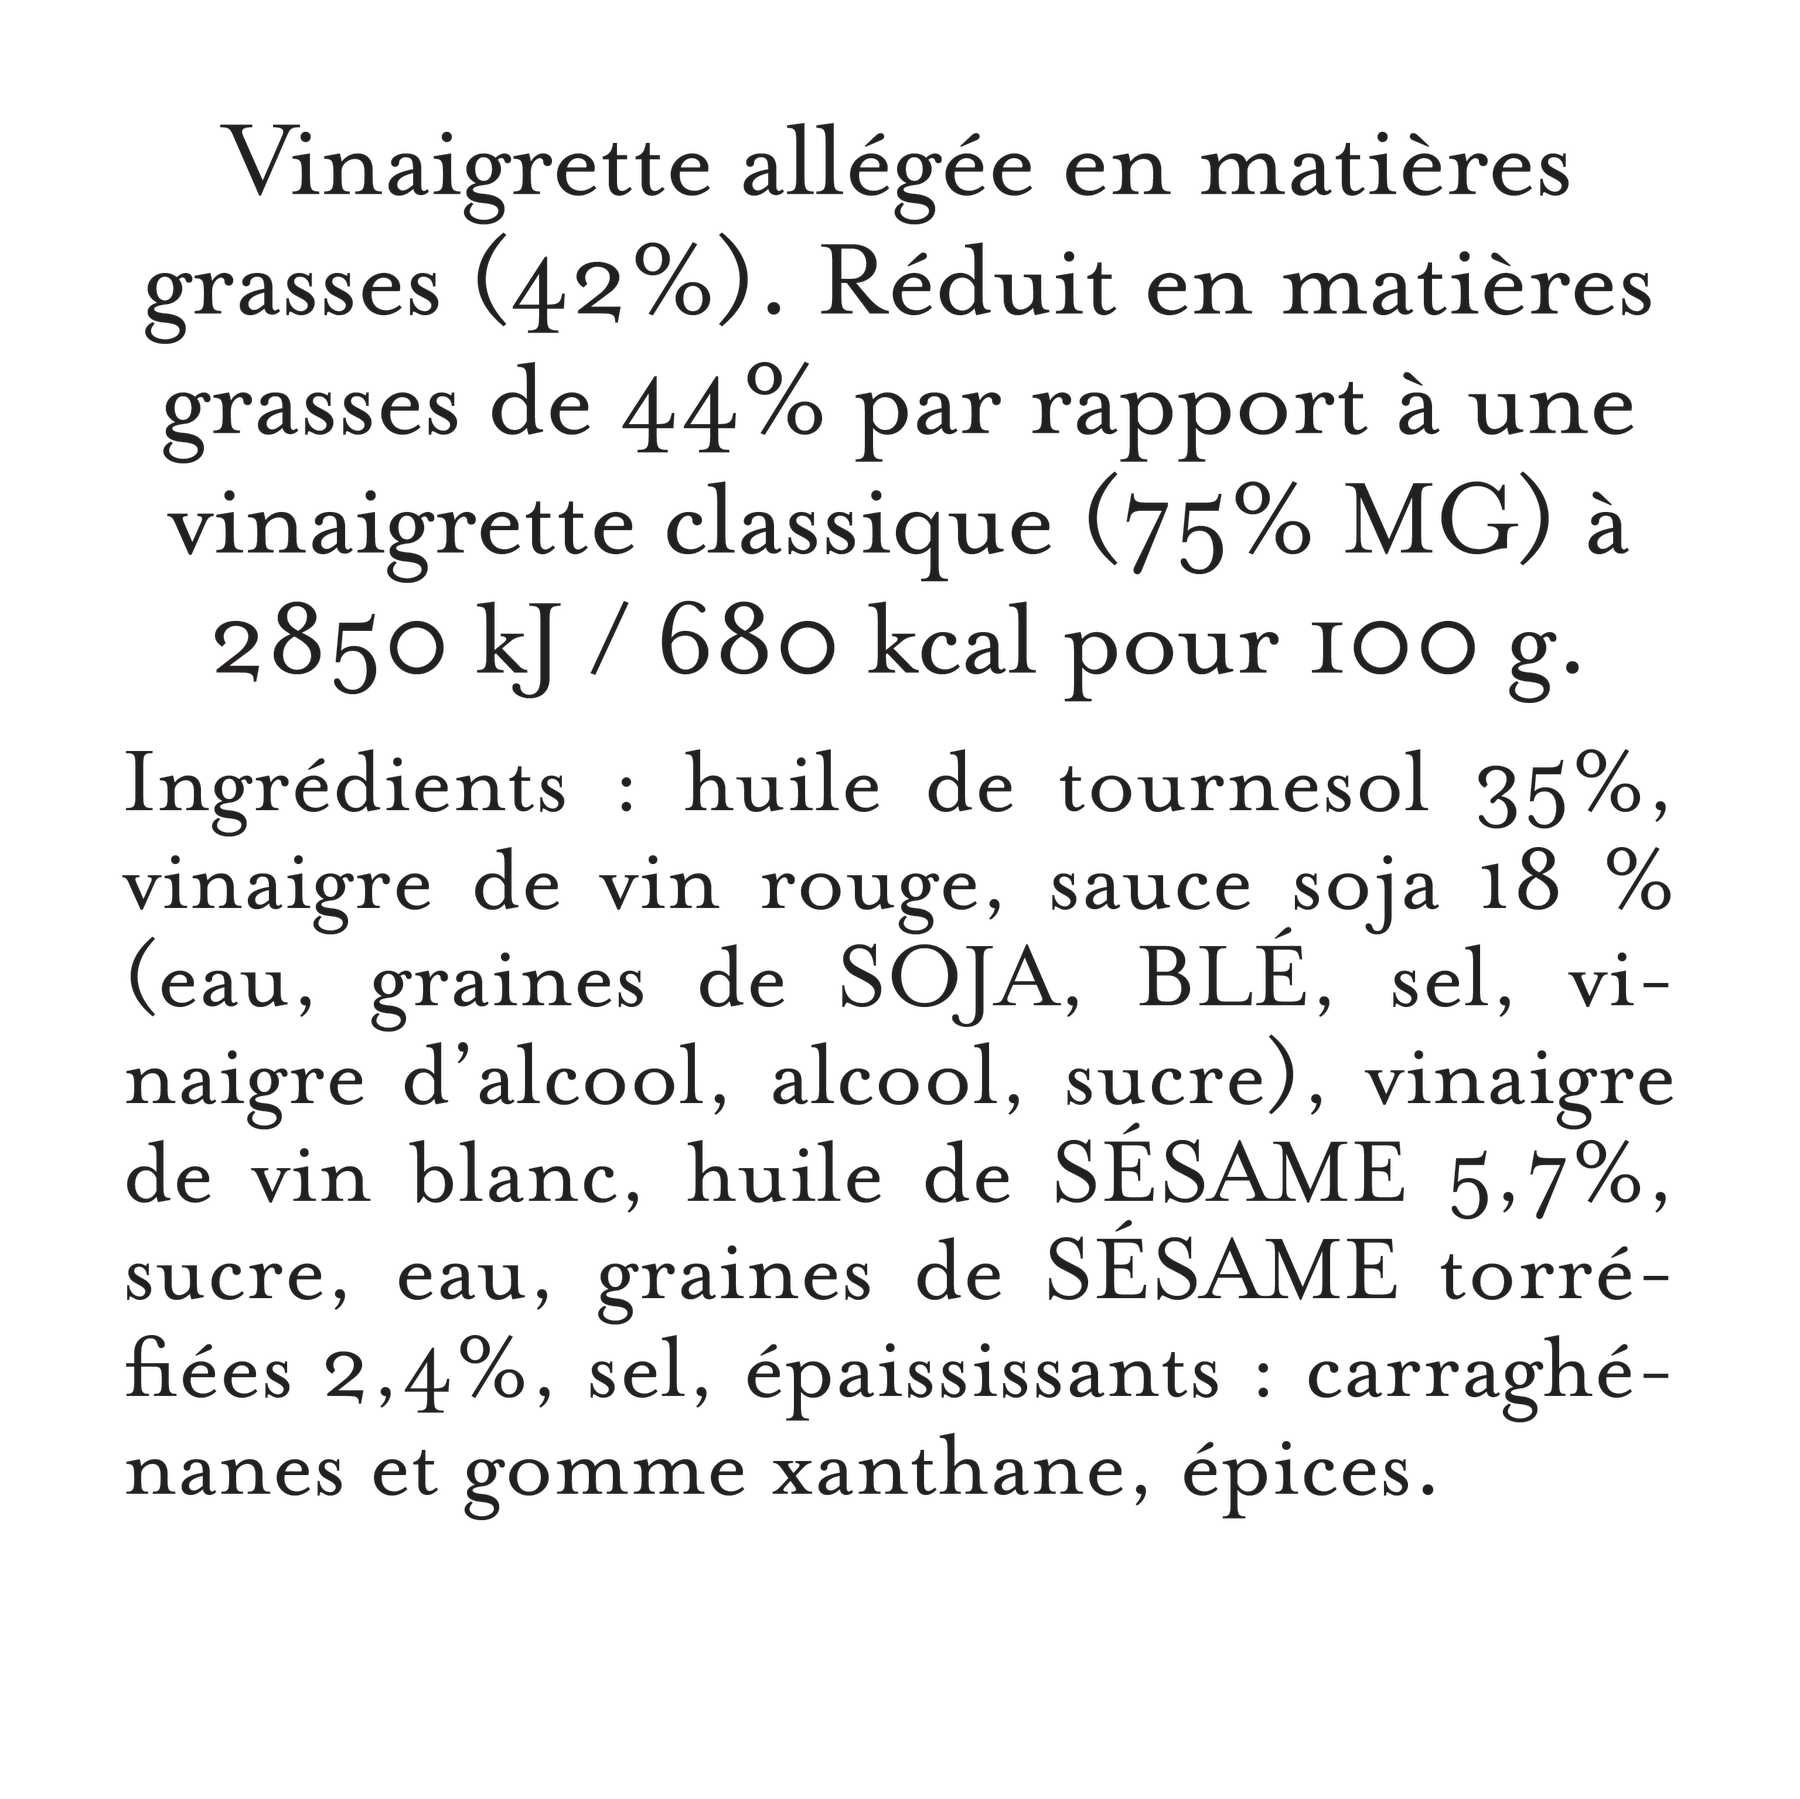 Maille - Vinaigrette huile de sesame & sauce soja graines de sesame torrefiees, 360 ml, description